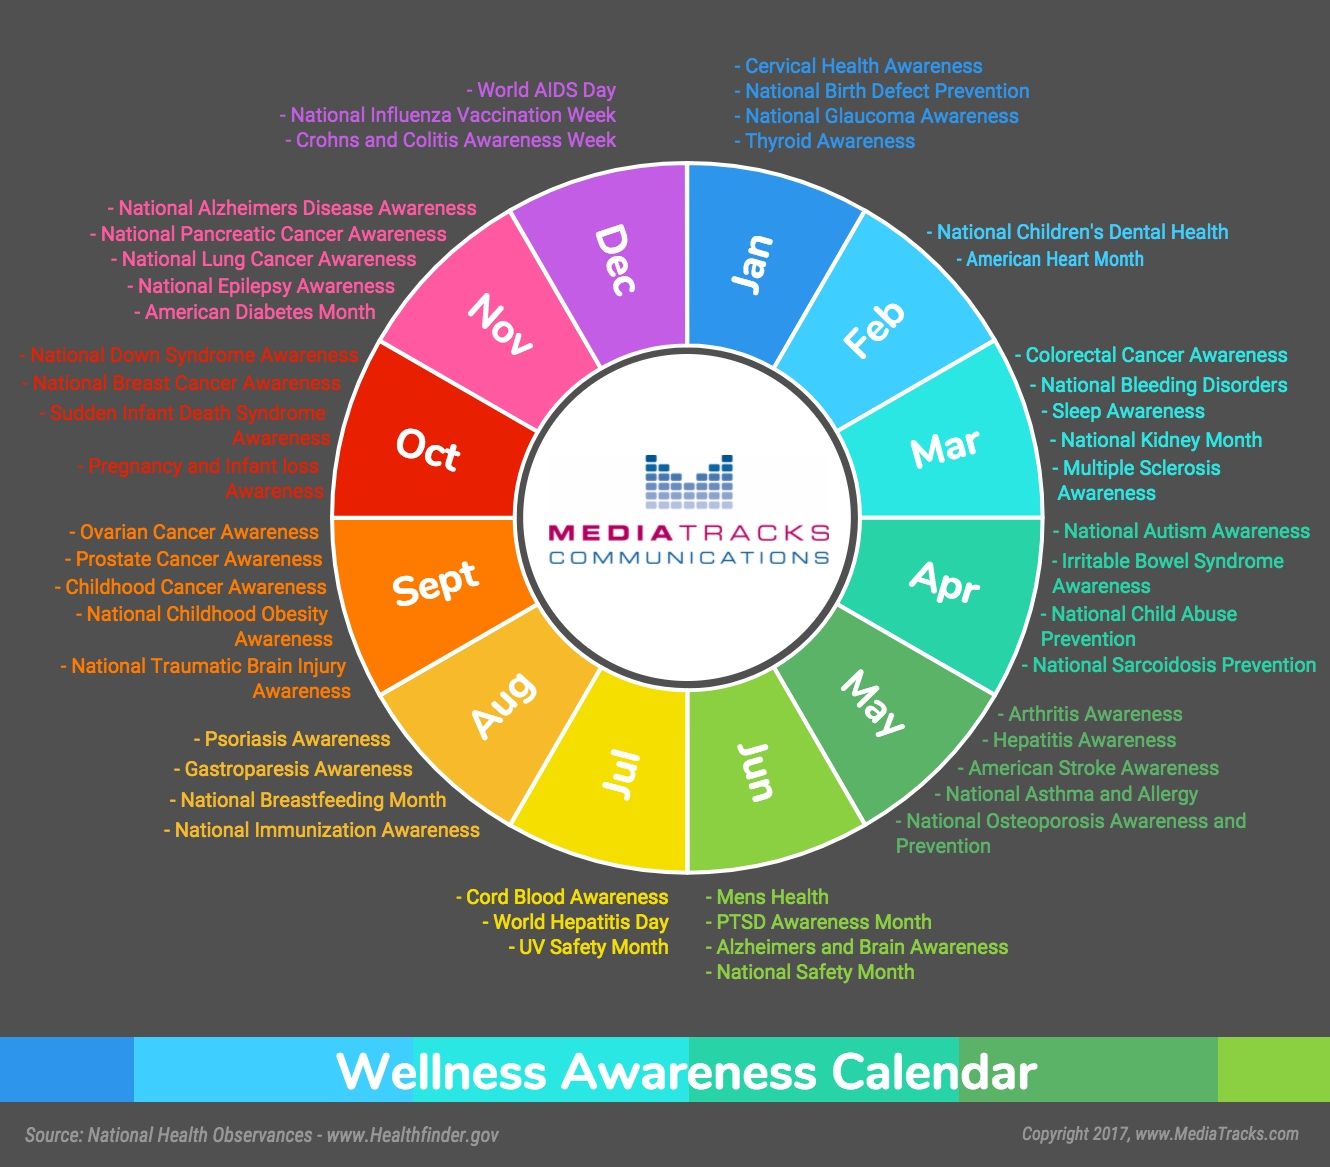 2017 Wellness Awareness Calendar [Infographic] - Mediatracks Month By Month Awareness Calendar